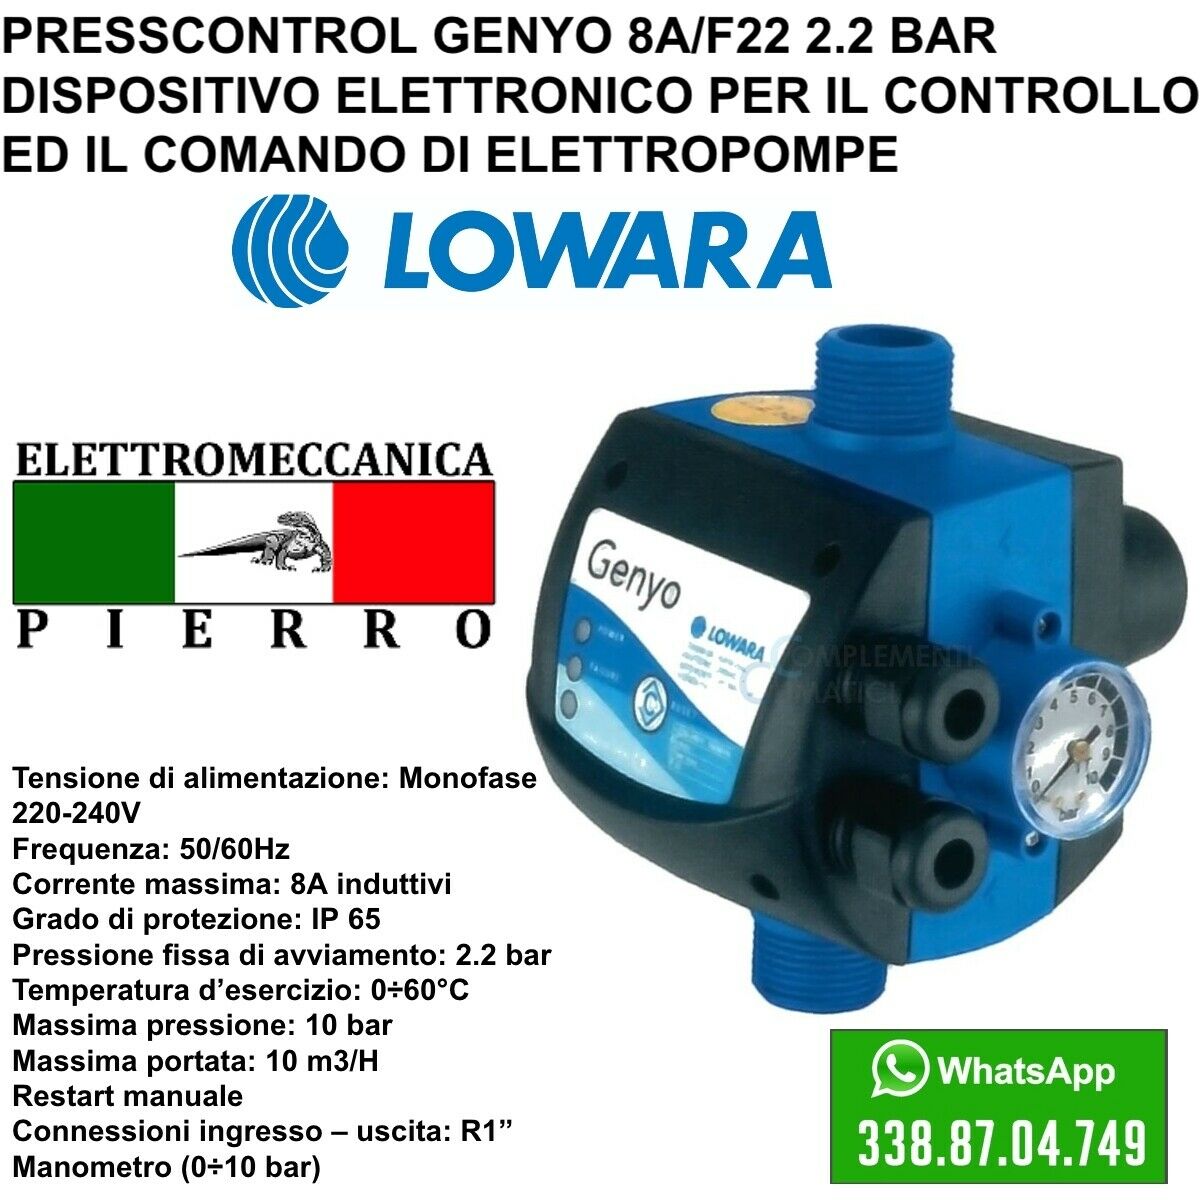 PRESSCONTROL GENYO 8A /F22 AUTOCLAVE LOWARA PER POMPA ELETTROPOMPA 2.2 –  Elettromeccanica Pierro Shop